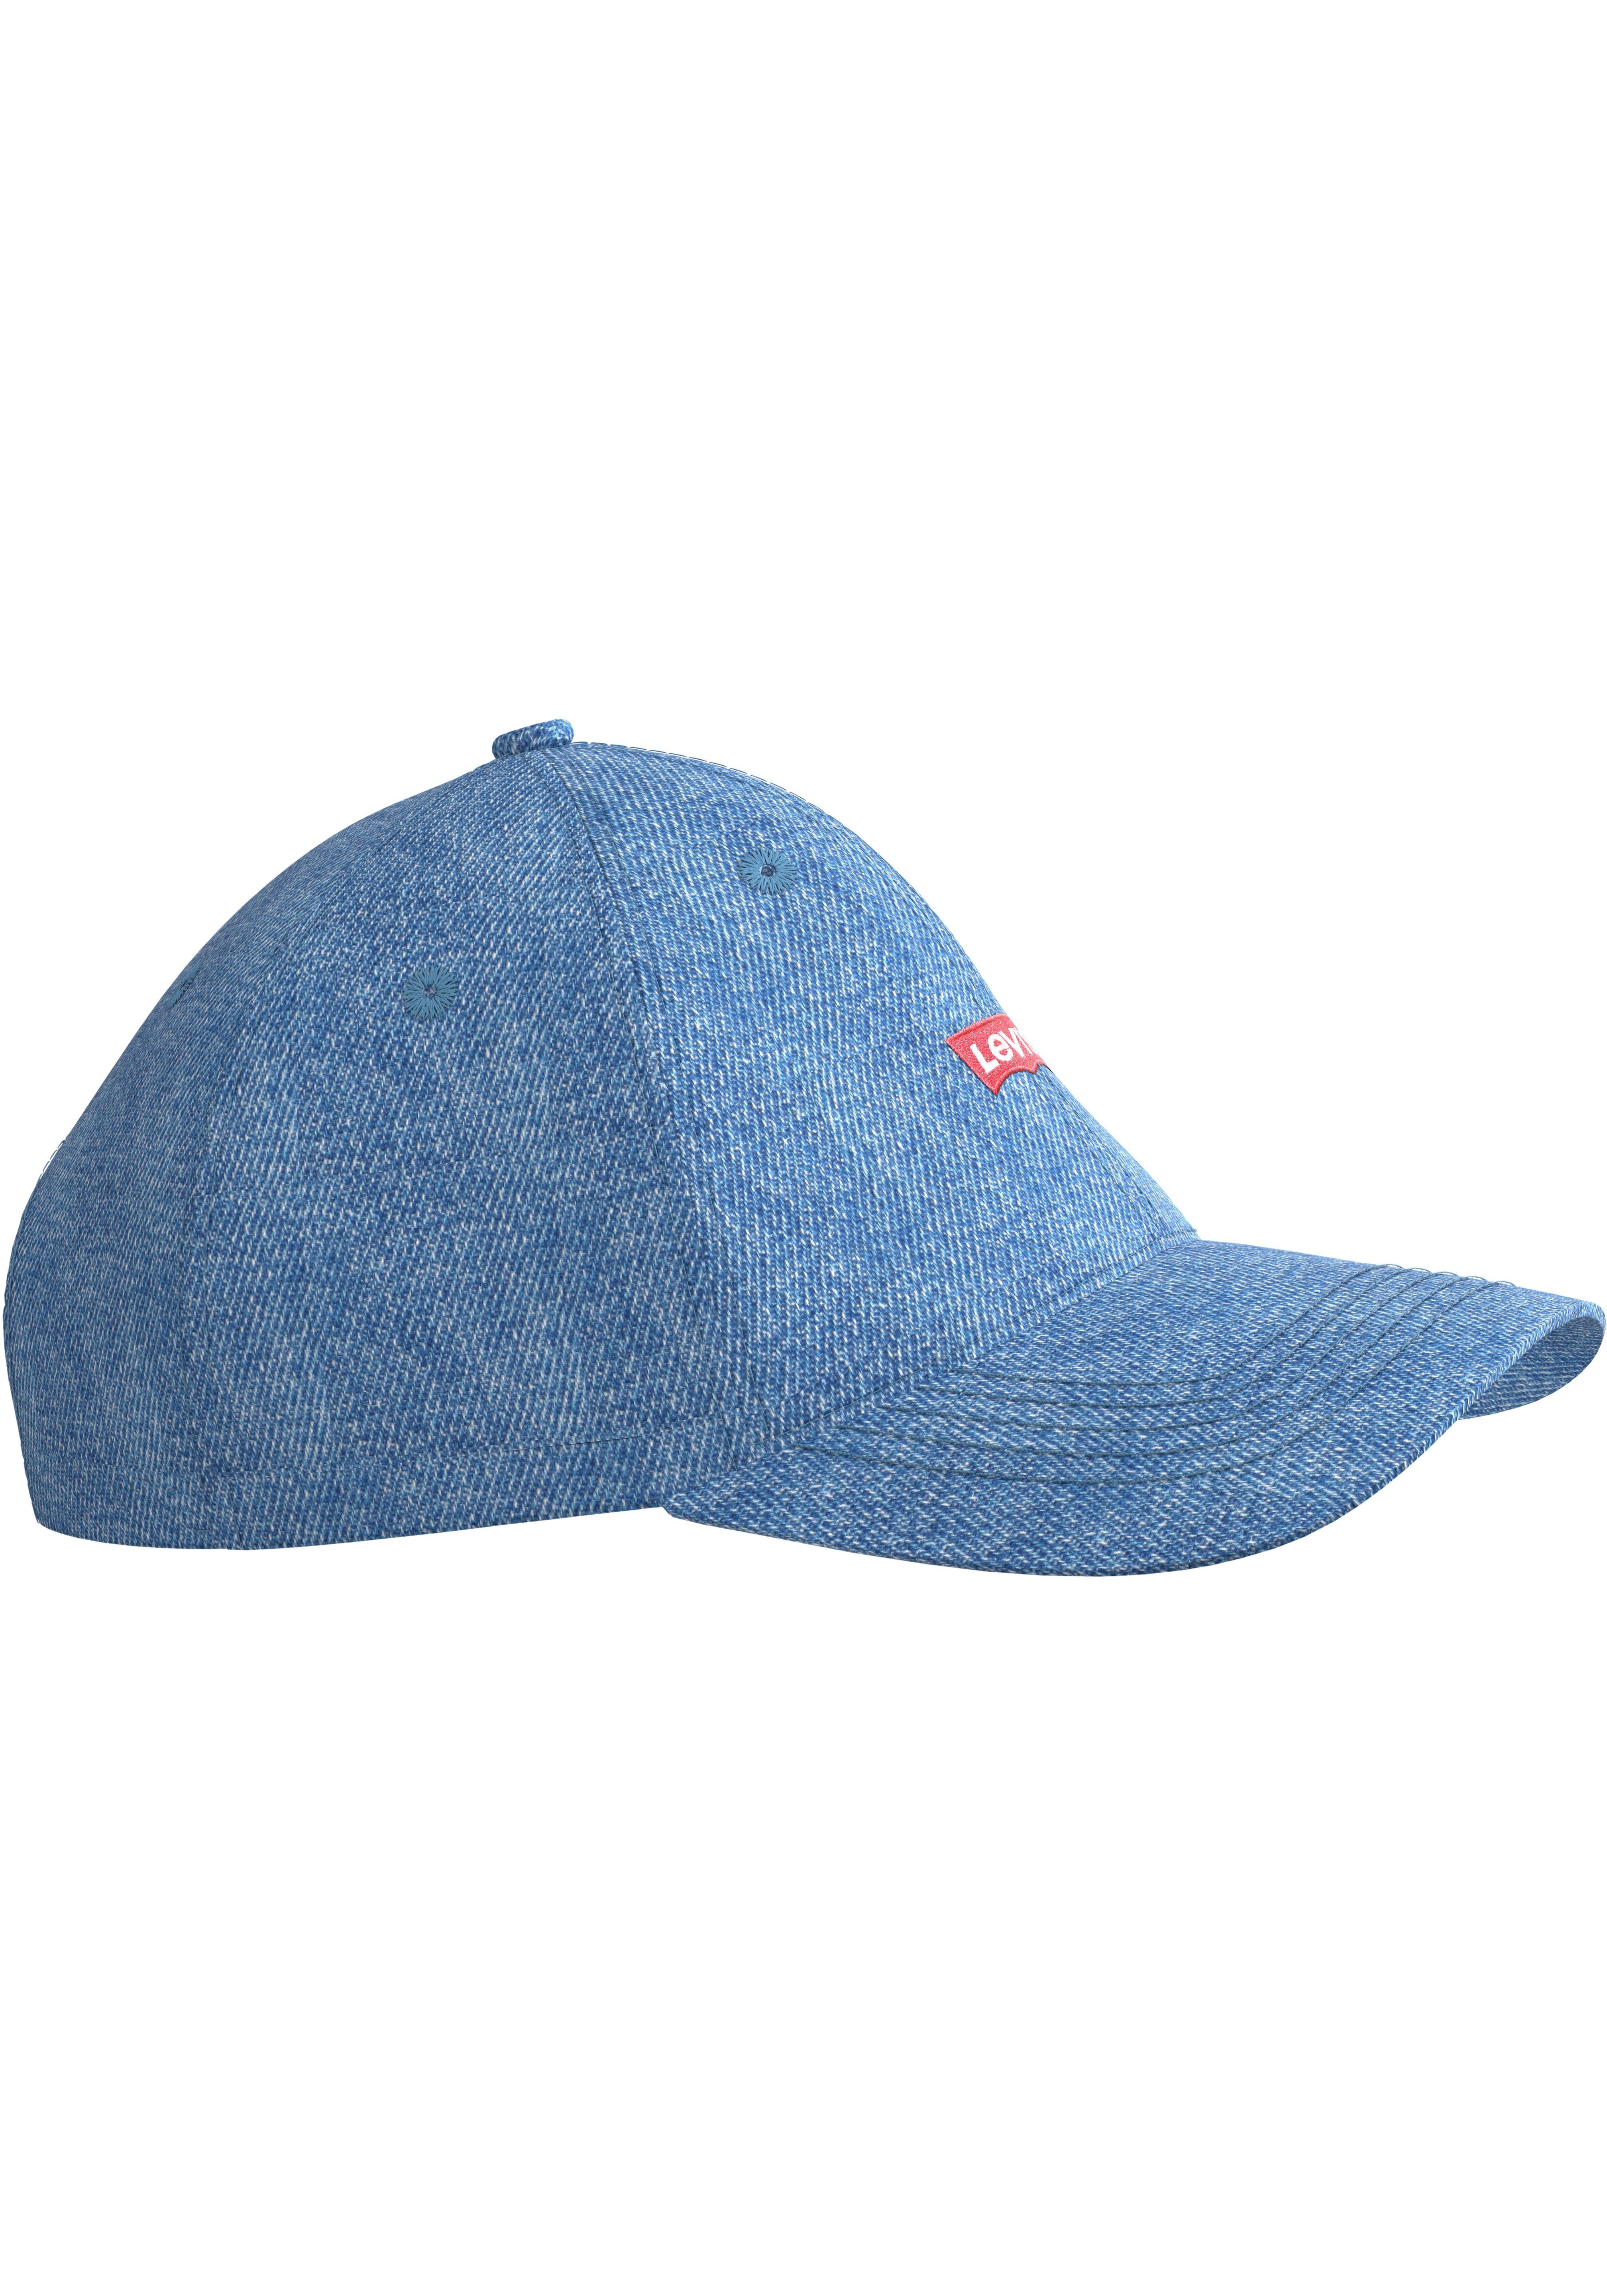 Levi's® Baseball Cap Housemark Denim